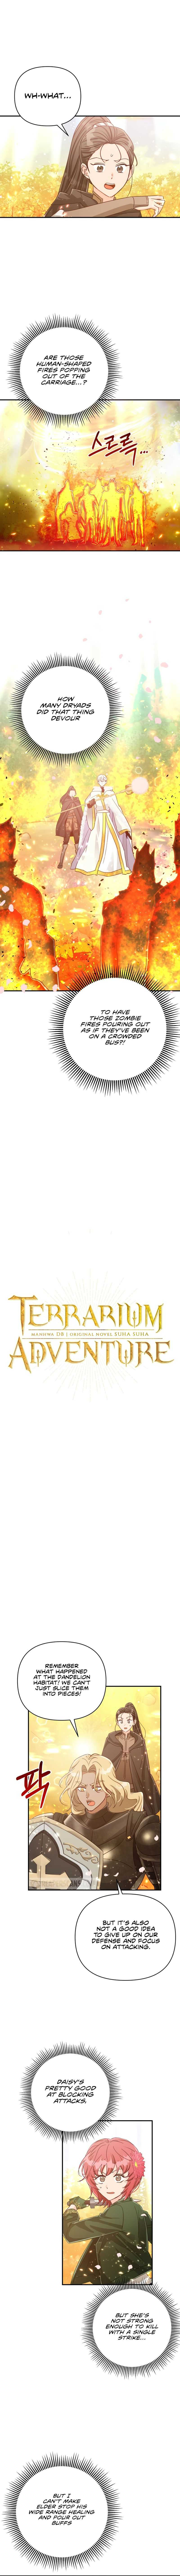 Terrarium Adventure - Page 2